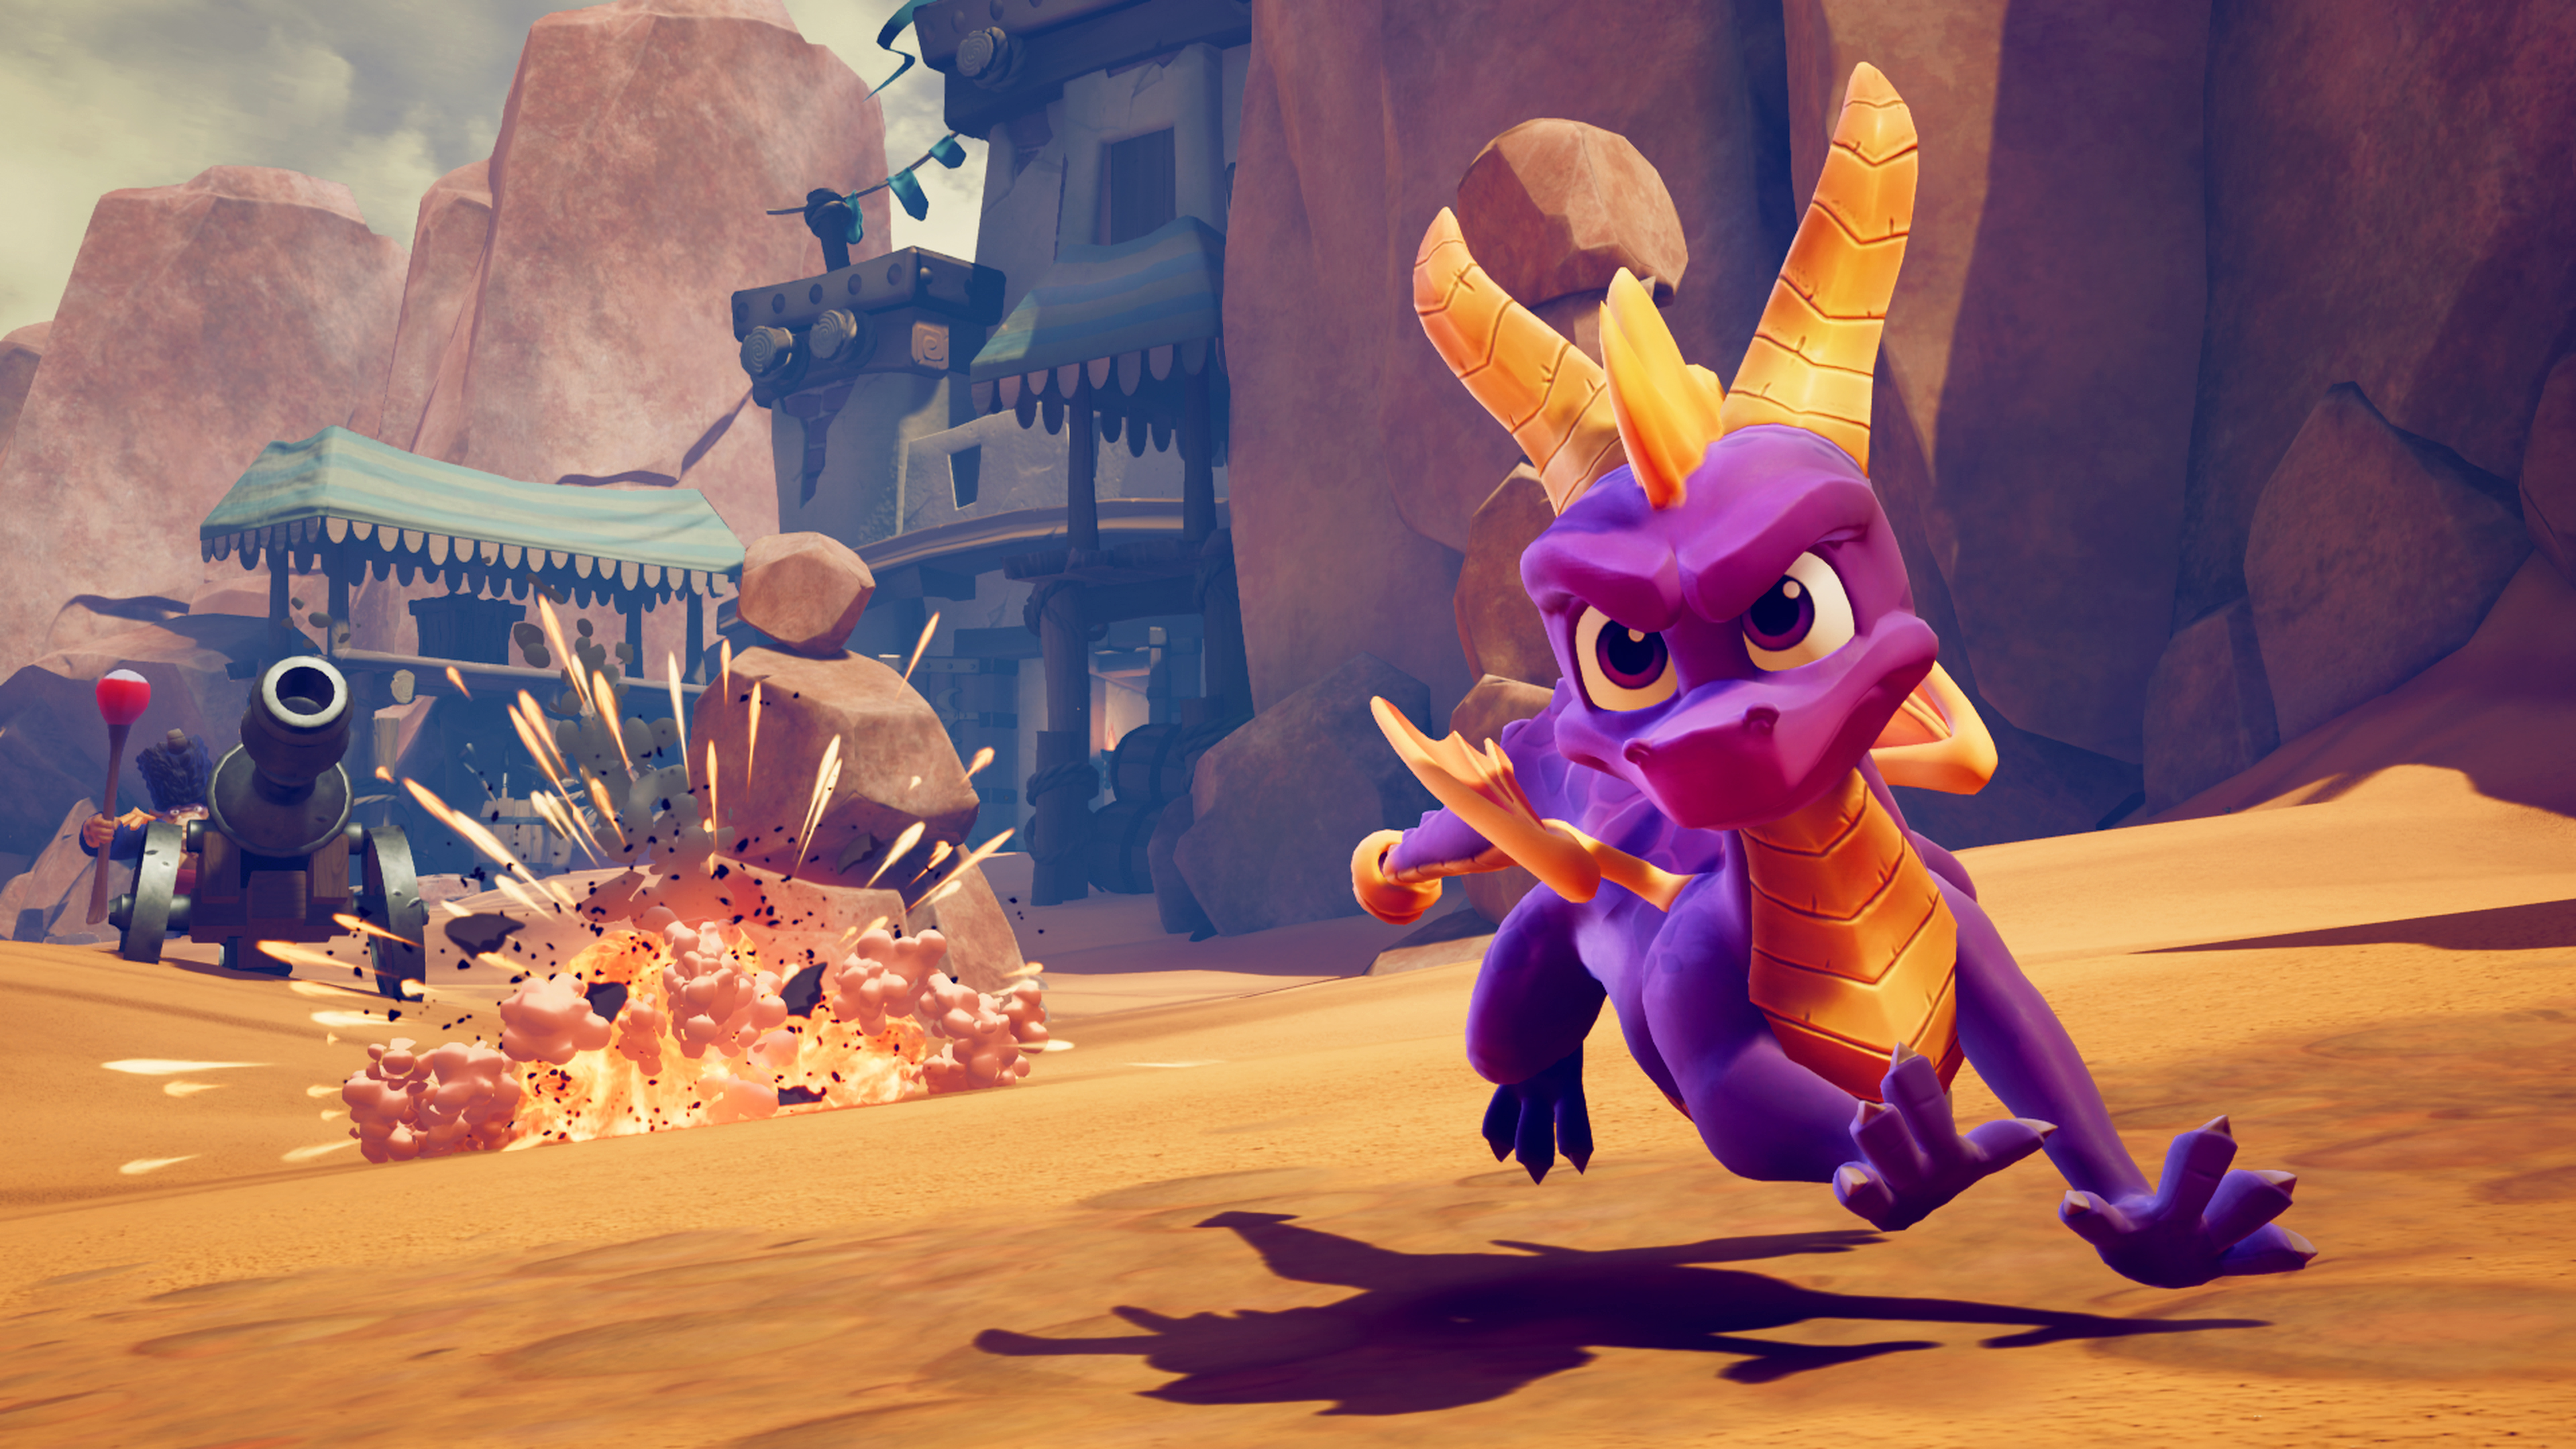 Spyro running away from enemy.